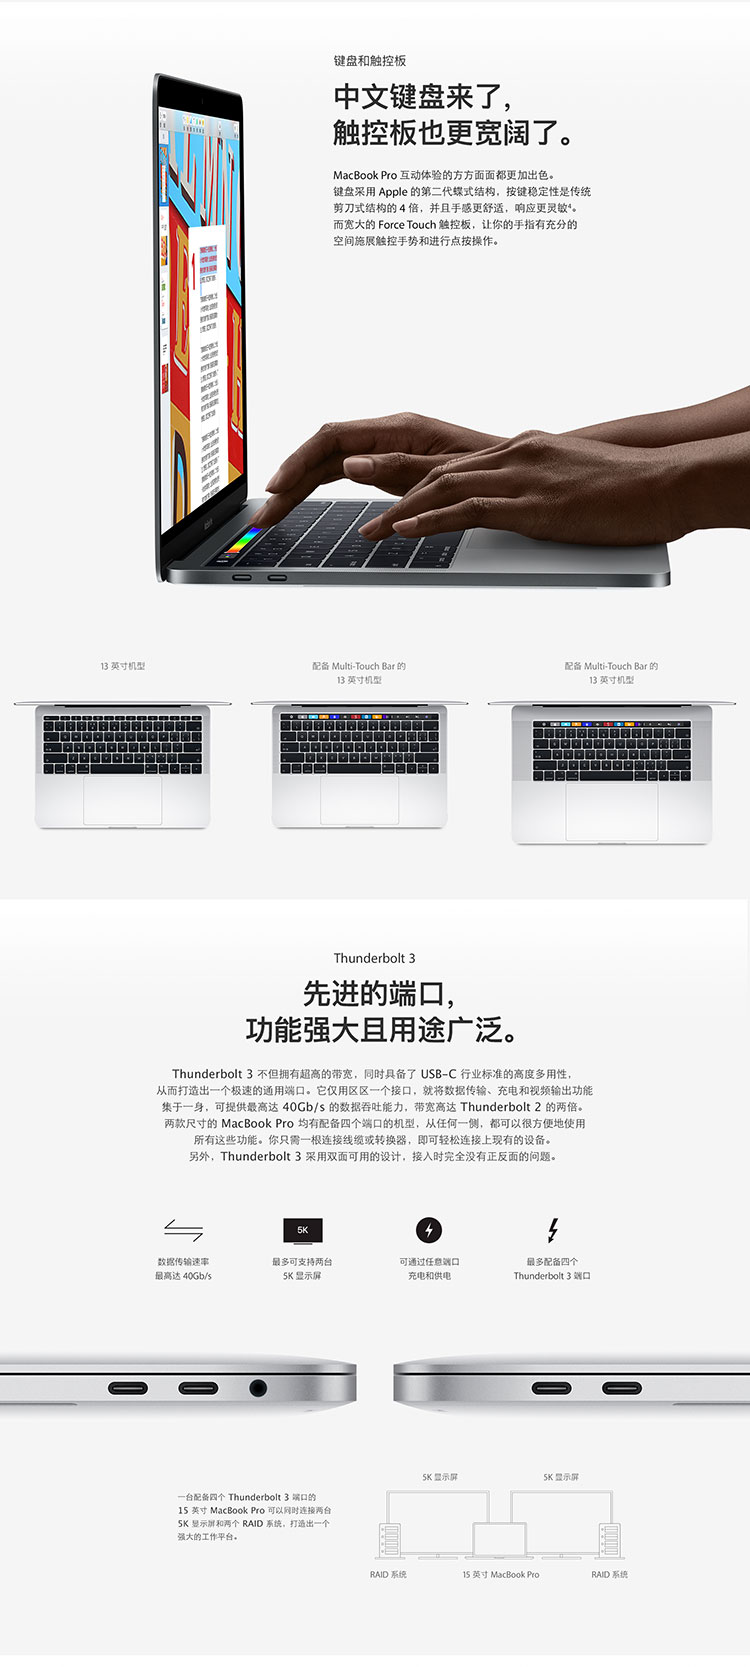 2017款Apple MacBook Pro 13.3英寸 i5处理器 8GB内存 256GB硬盘 笔记本电脑 深空灰色 MPXT2CH/A